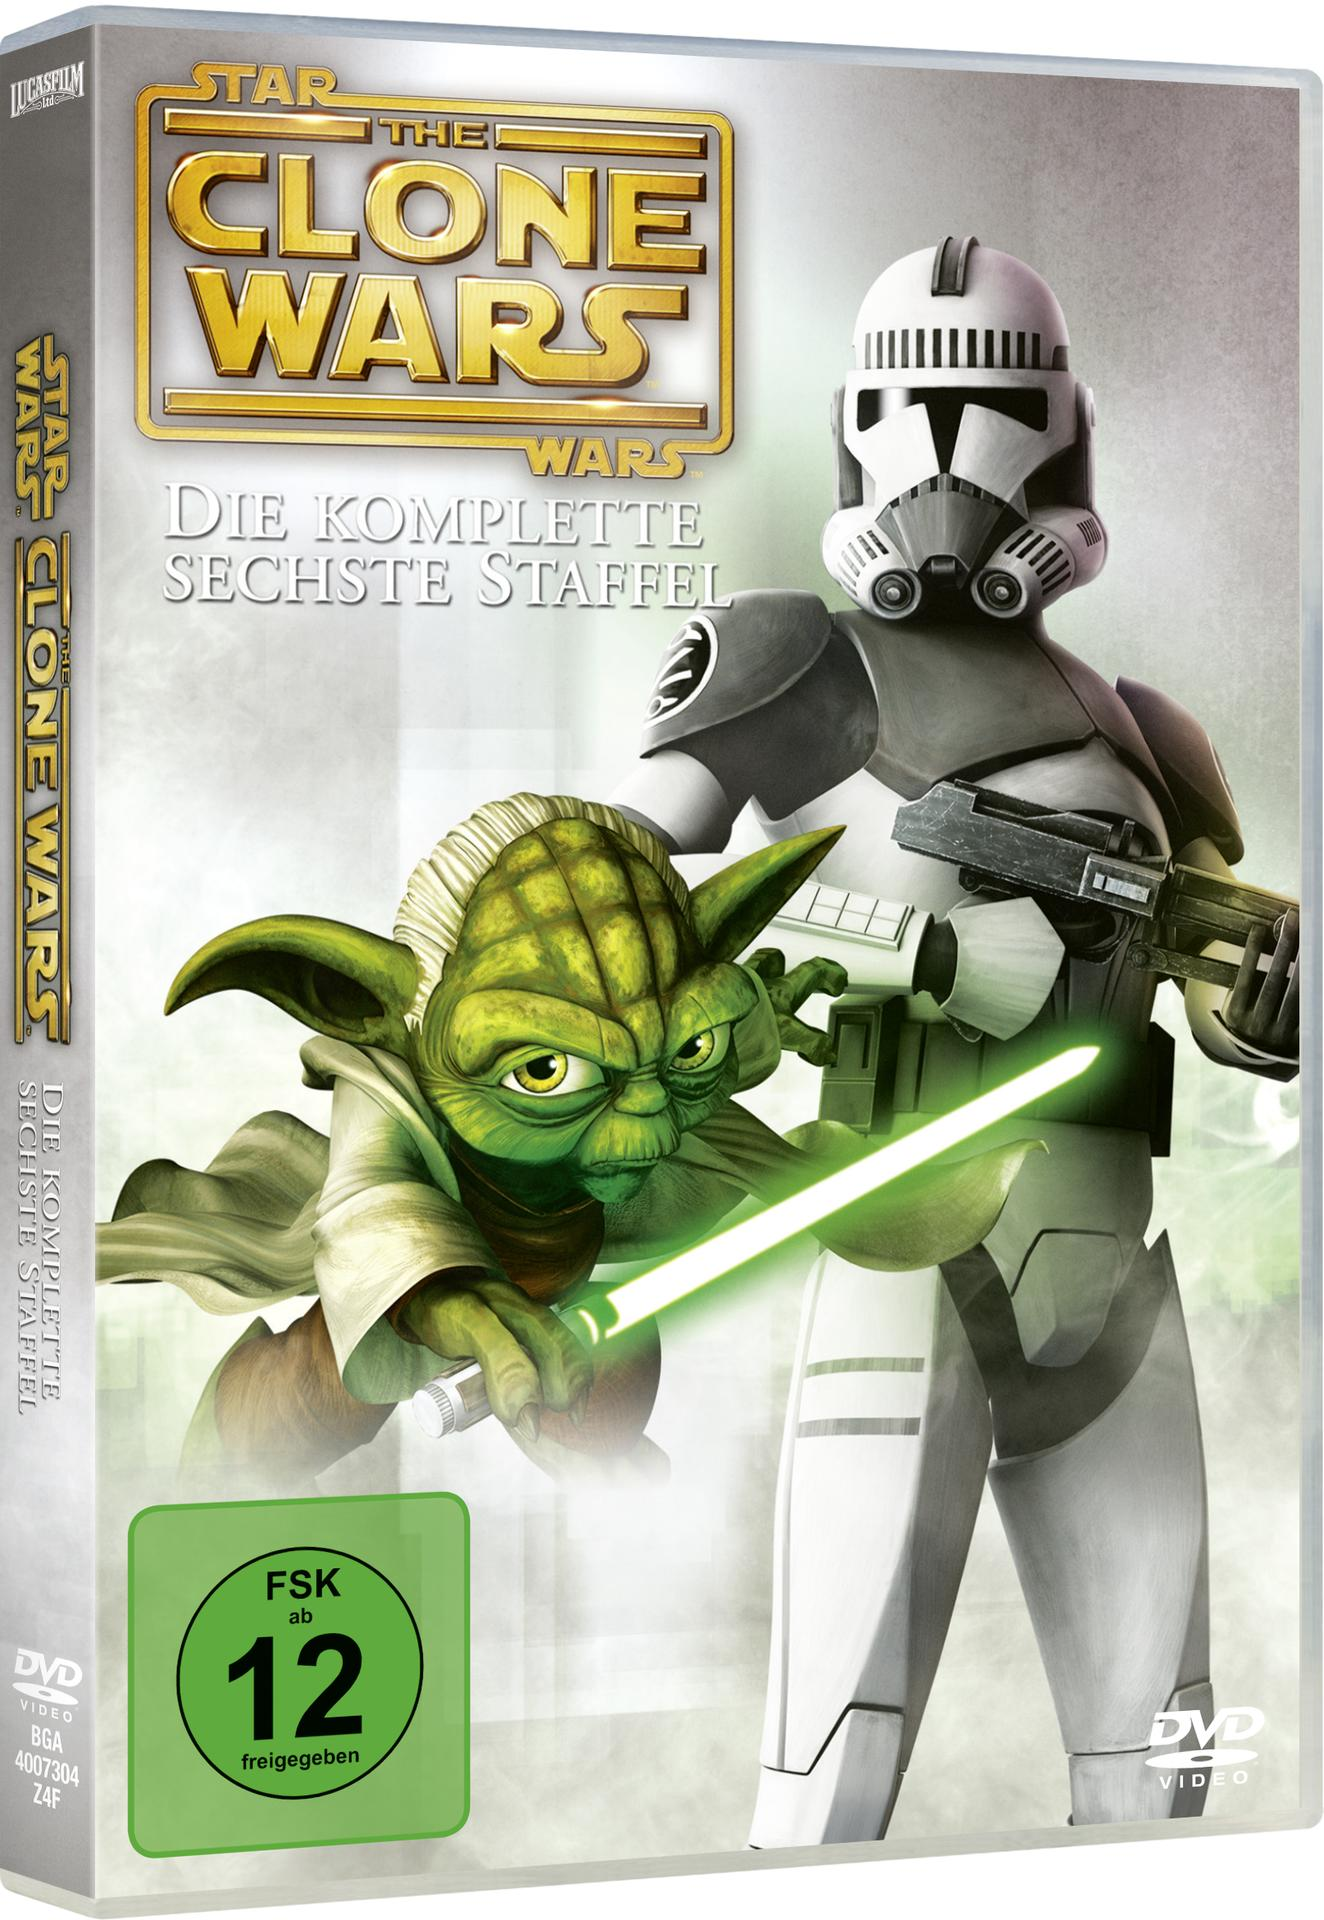 6 - Wars Clone Star Staffel DVD Wars: The